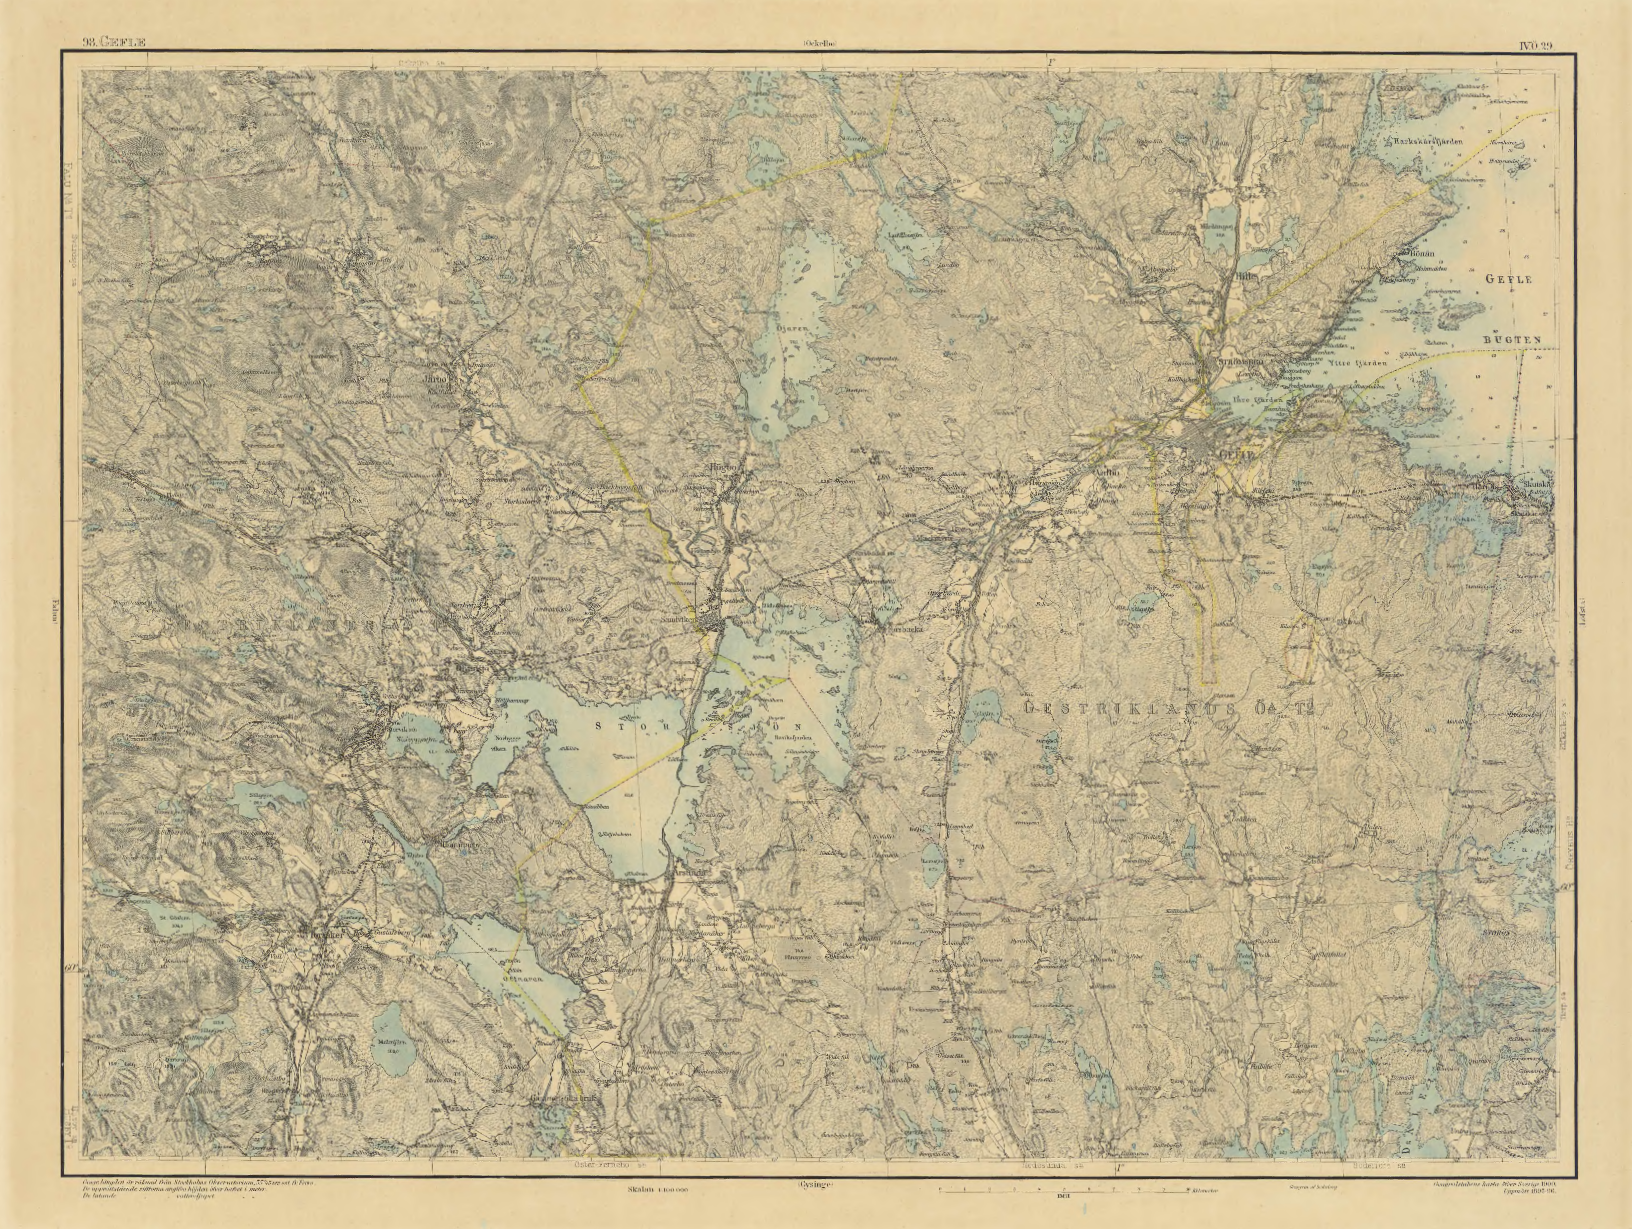 Generalstabskarta från 1900